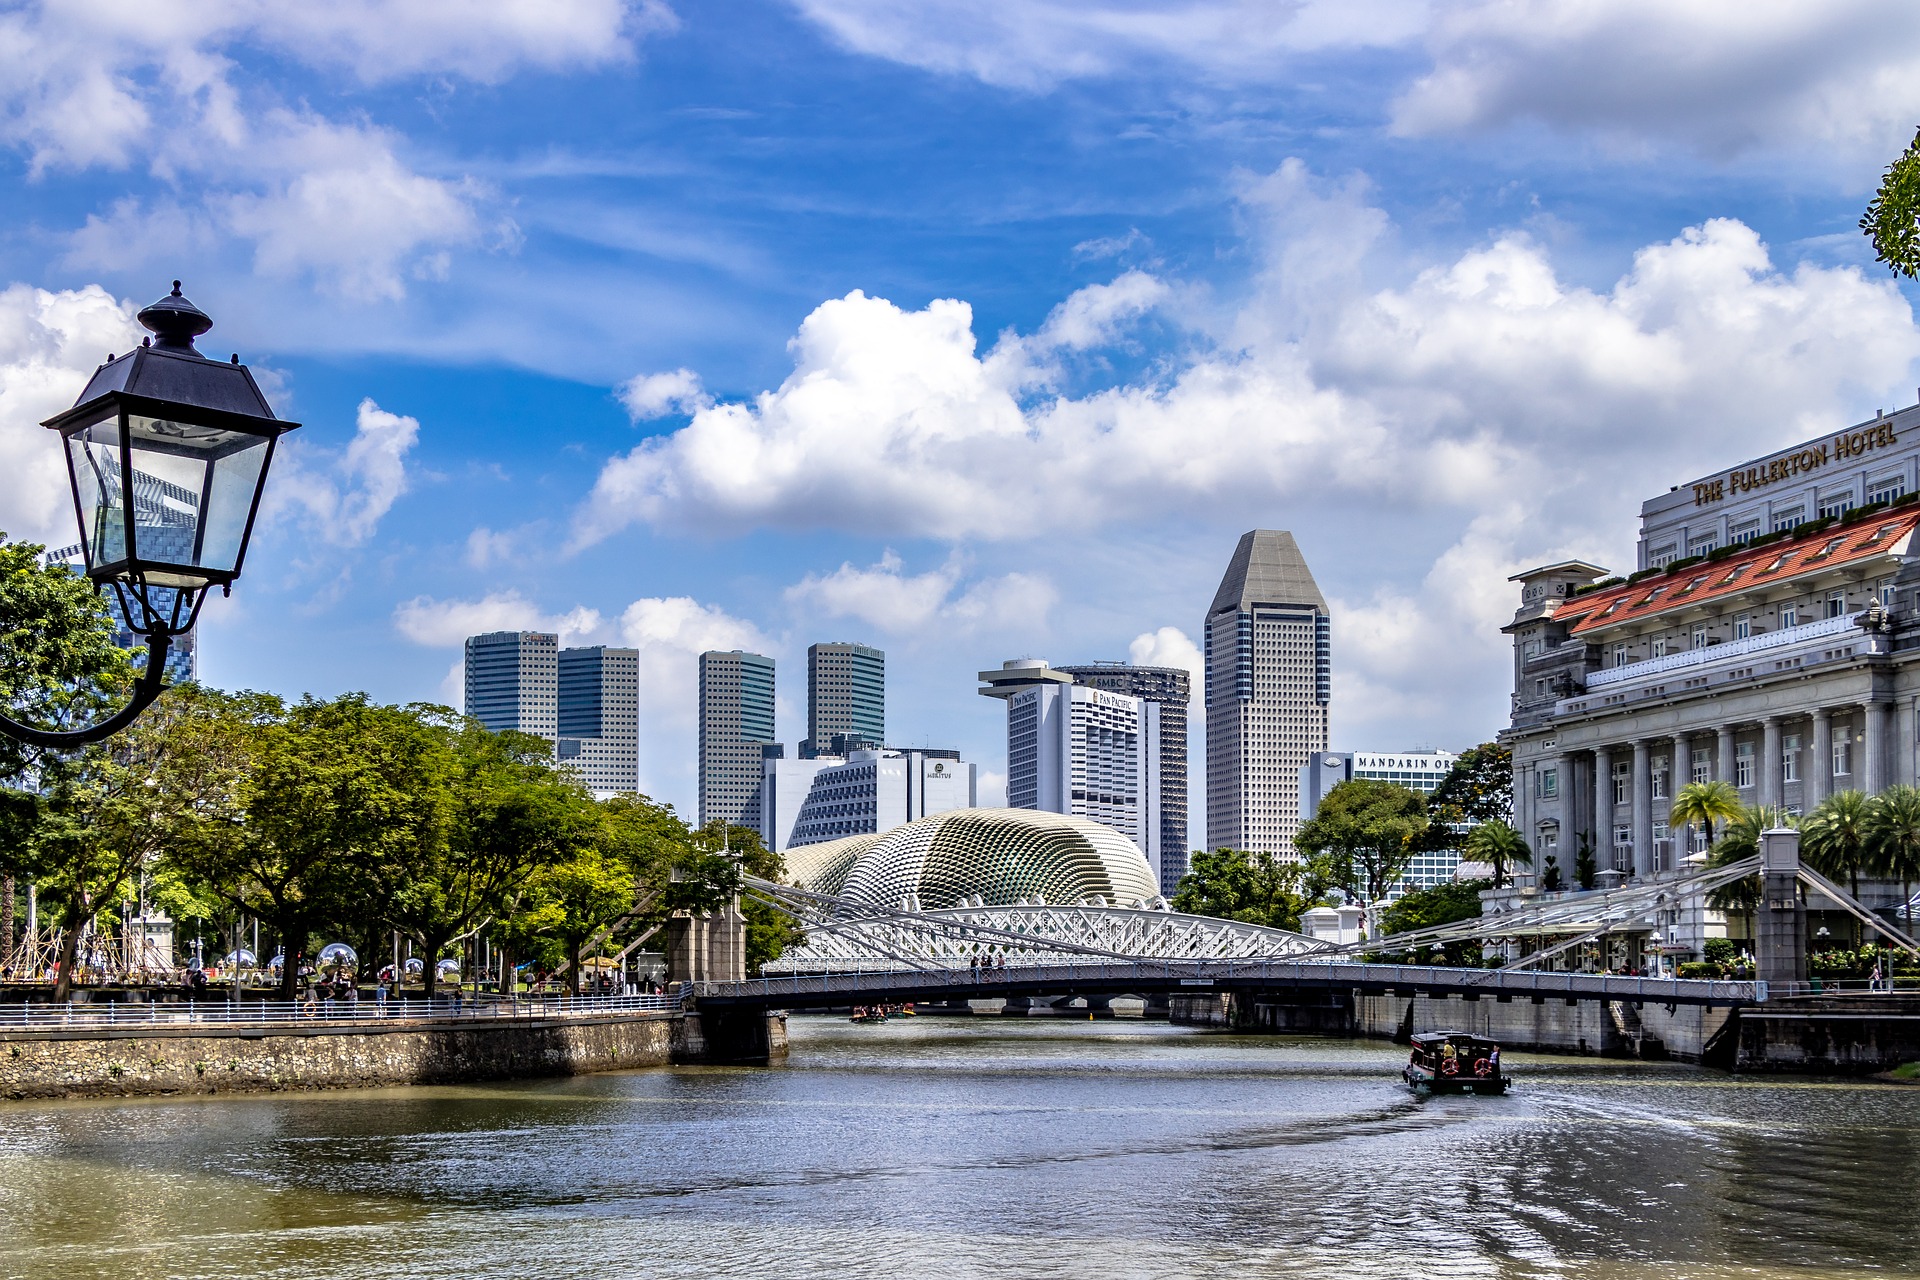 Singapour a proposé un projet de loi sur les fausses nouvelles, qui, s'il est adopté, risque de porter gravement atteinte à la liberté d'expression dans la région. (Image: Nextvoyages/ Pixabay)